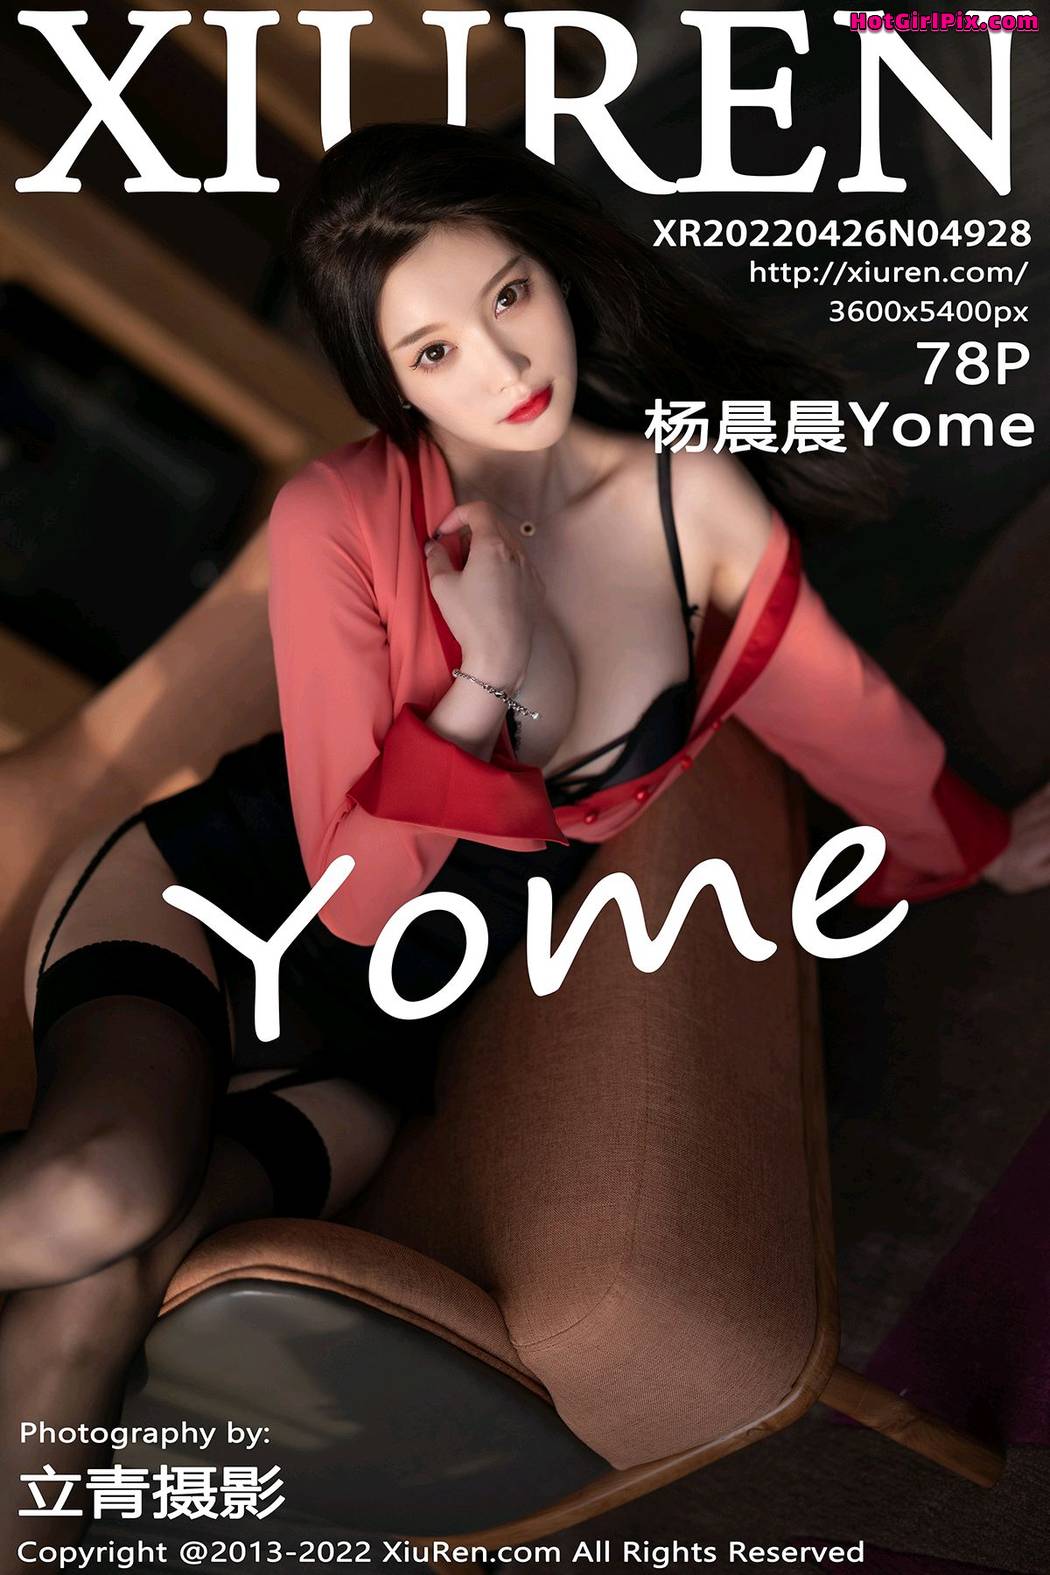 [XIUREN] No.4928 Yang Chen Chen 杨晨晨Yome (Yang Chen Chen 杨晨晨sugar) Cover Photo